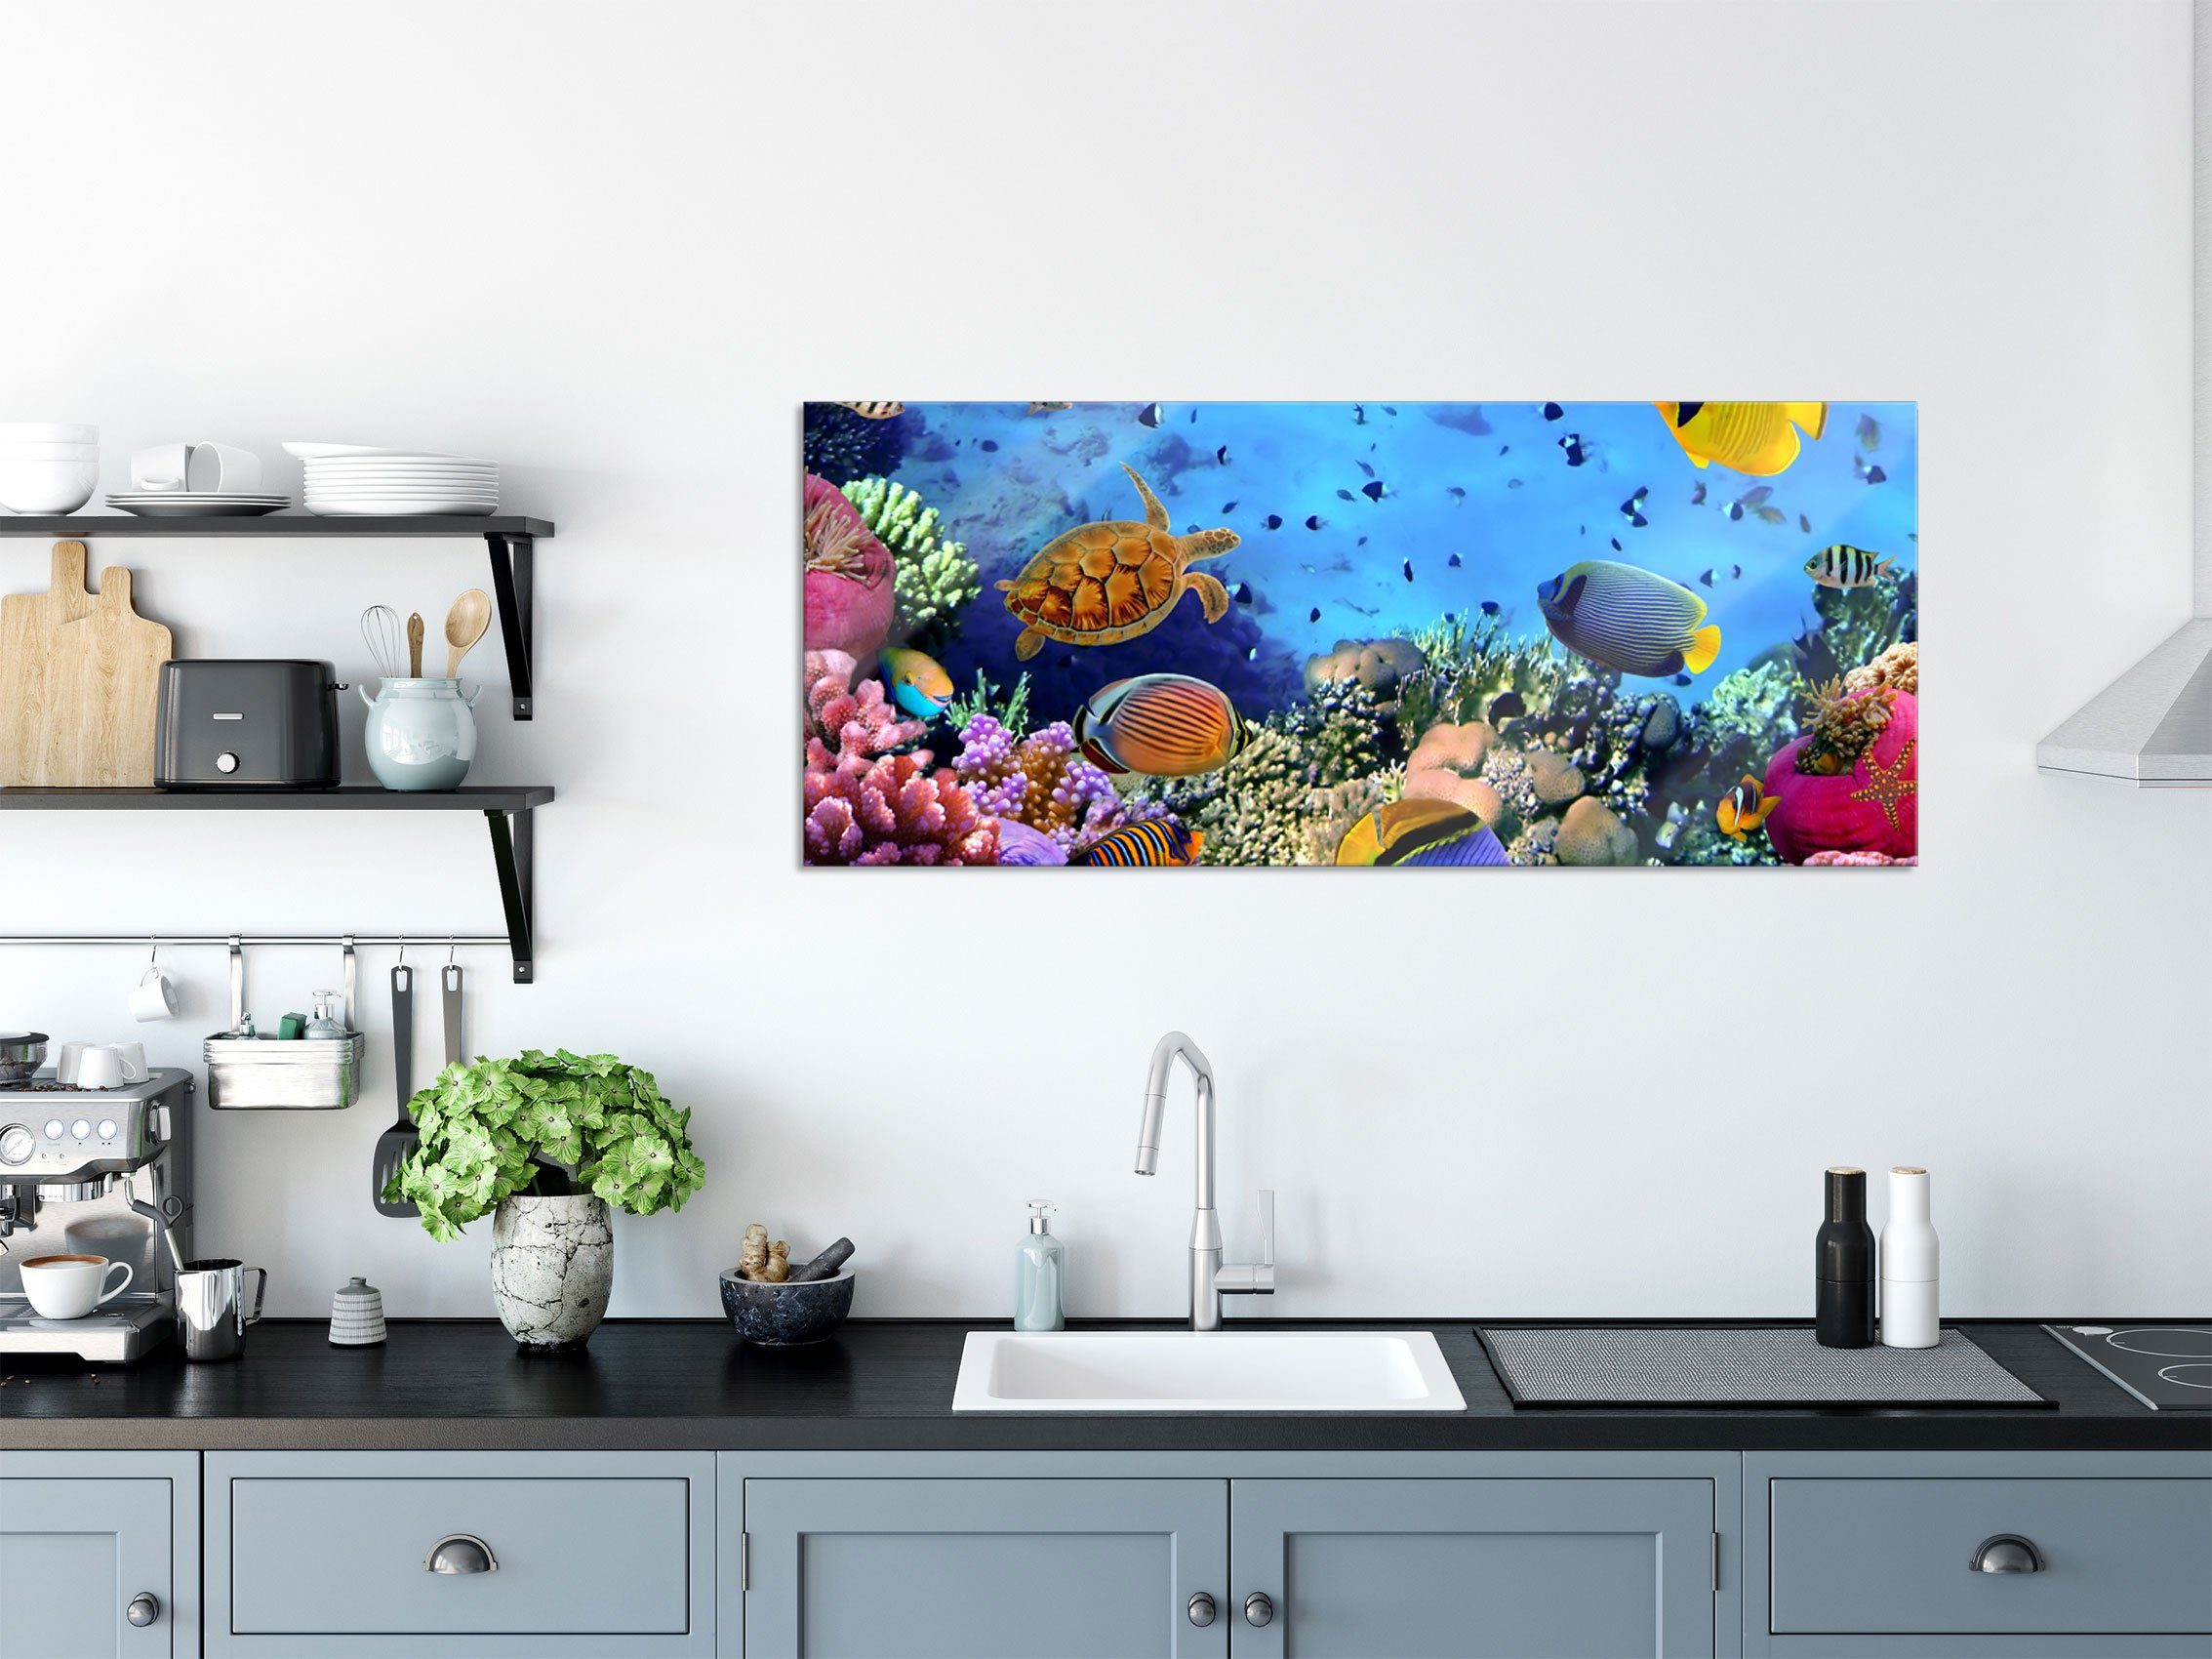 Pixxprint Glasbild aus Korallenriff, Echtglas, Aufhängungen Fische inkl. Abstandshalter Fische (1 Korallenriff und Glasbild St), über über